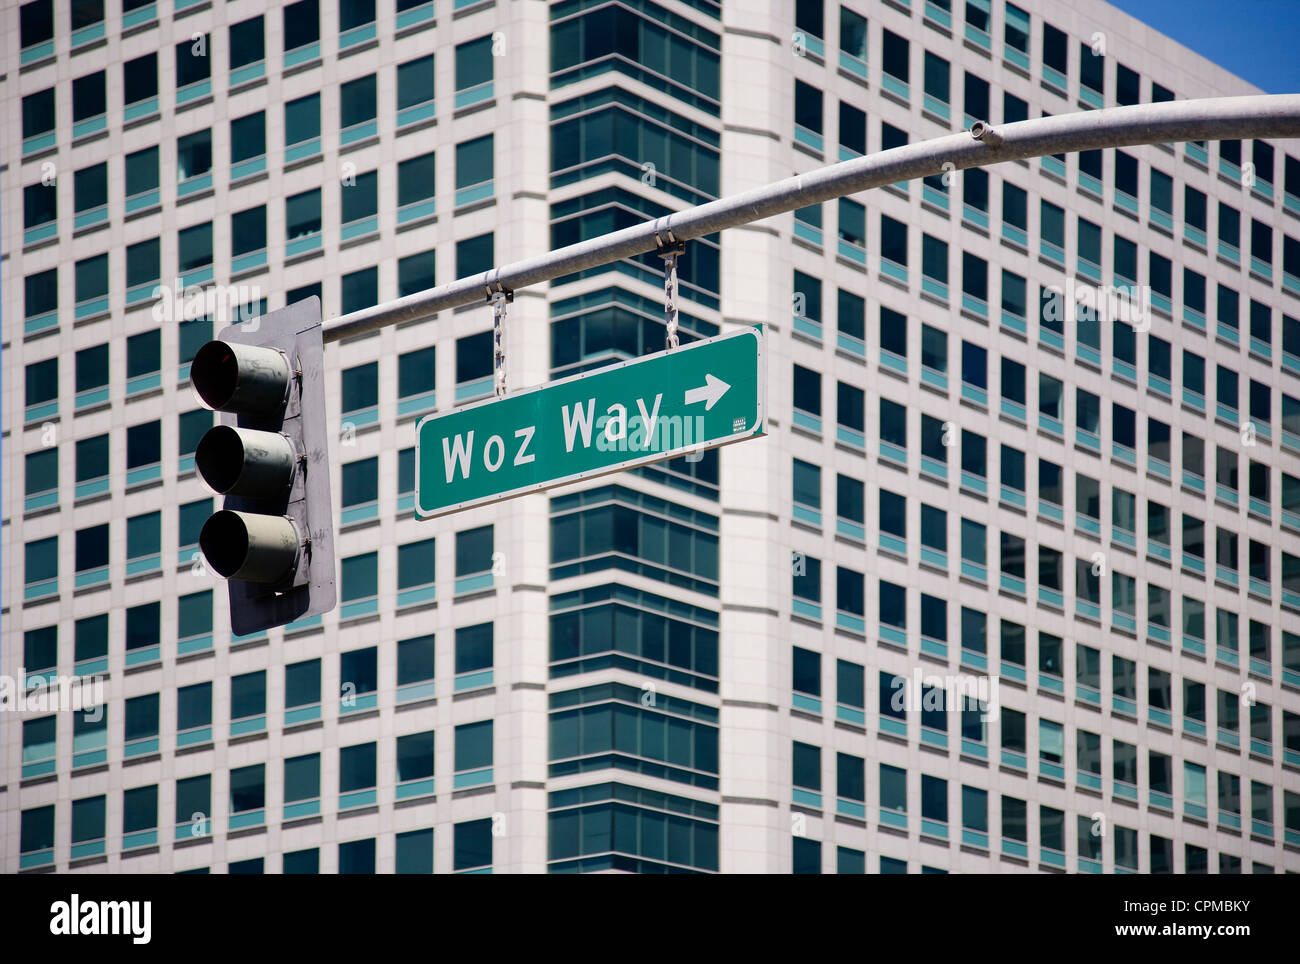 Woz Way. San Jose, Californie. Banque D'Images